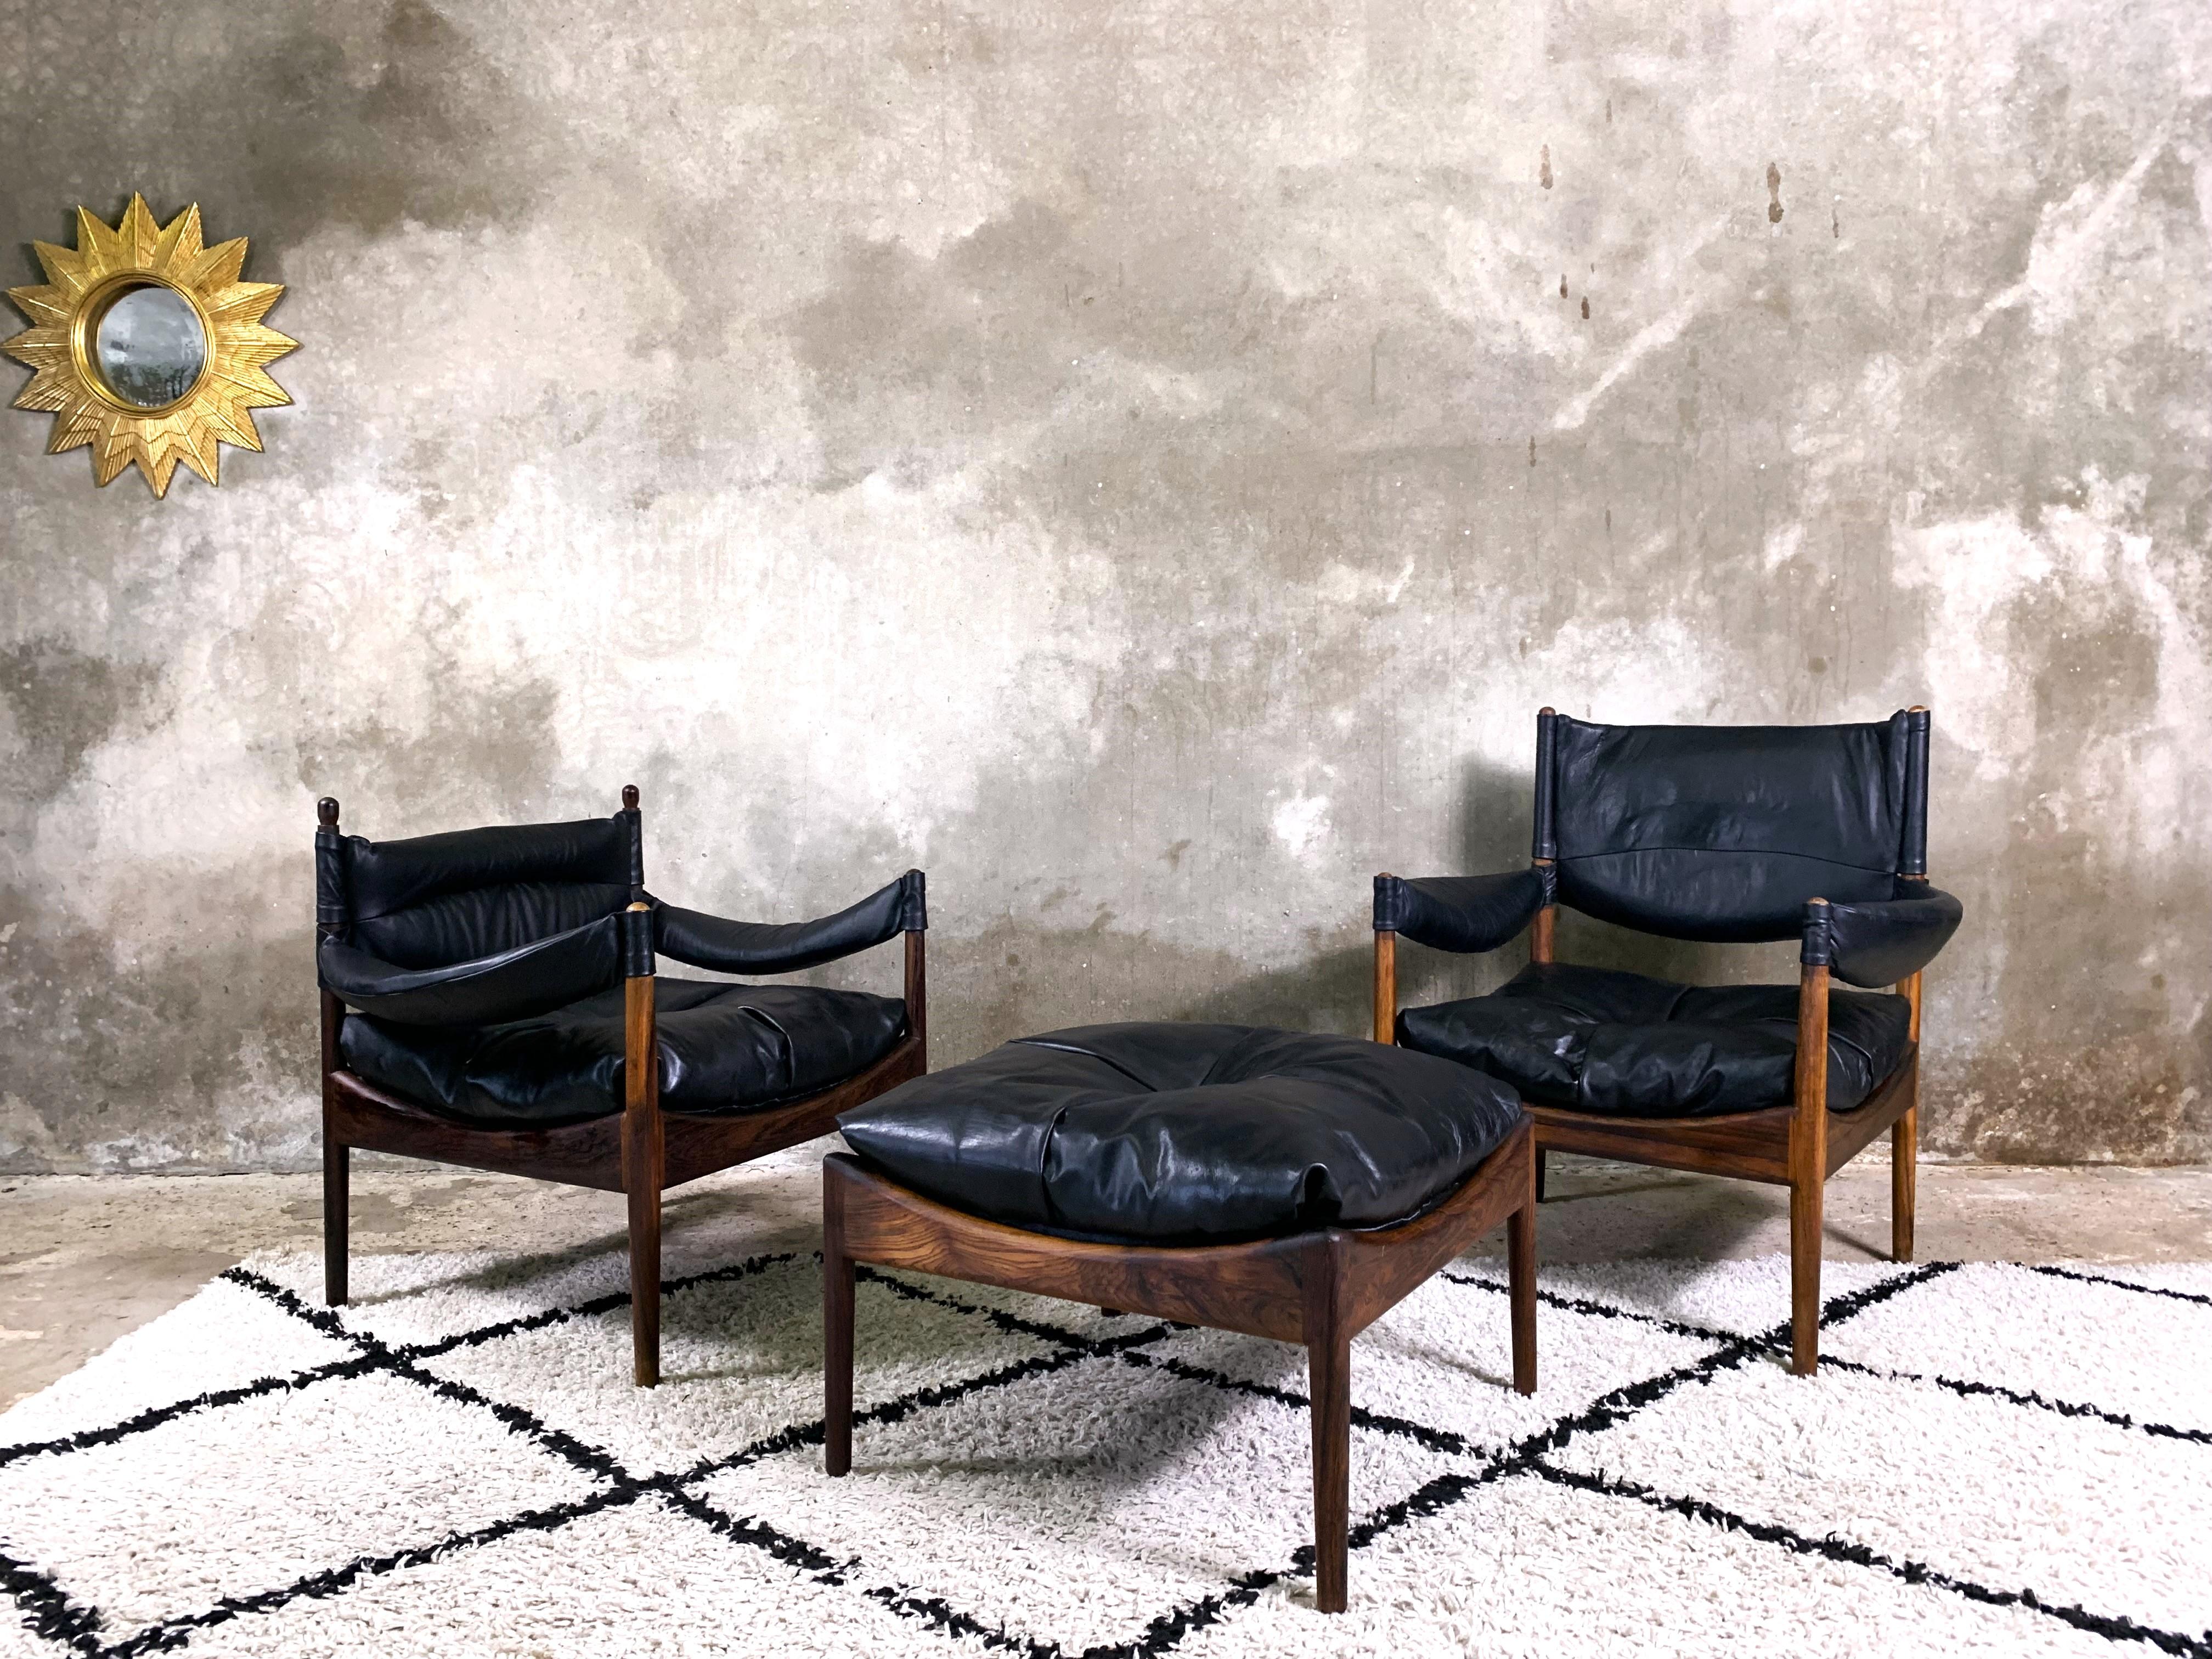 Un bel ensemble de deux fauteuils et d'un pouf de la série Modus, conçue par Kristian Vedel pour Willadsen Møbelfabrik. Cadres en bois de palissandre. Les coussins en cuir naturel et le rembourrage en plumes d'oie rendent les fauteuils